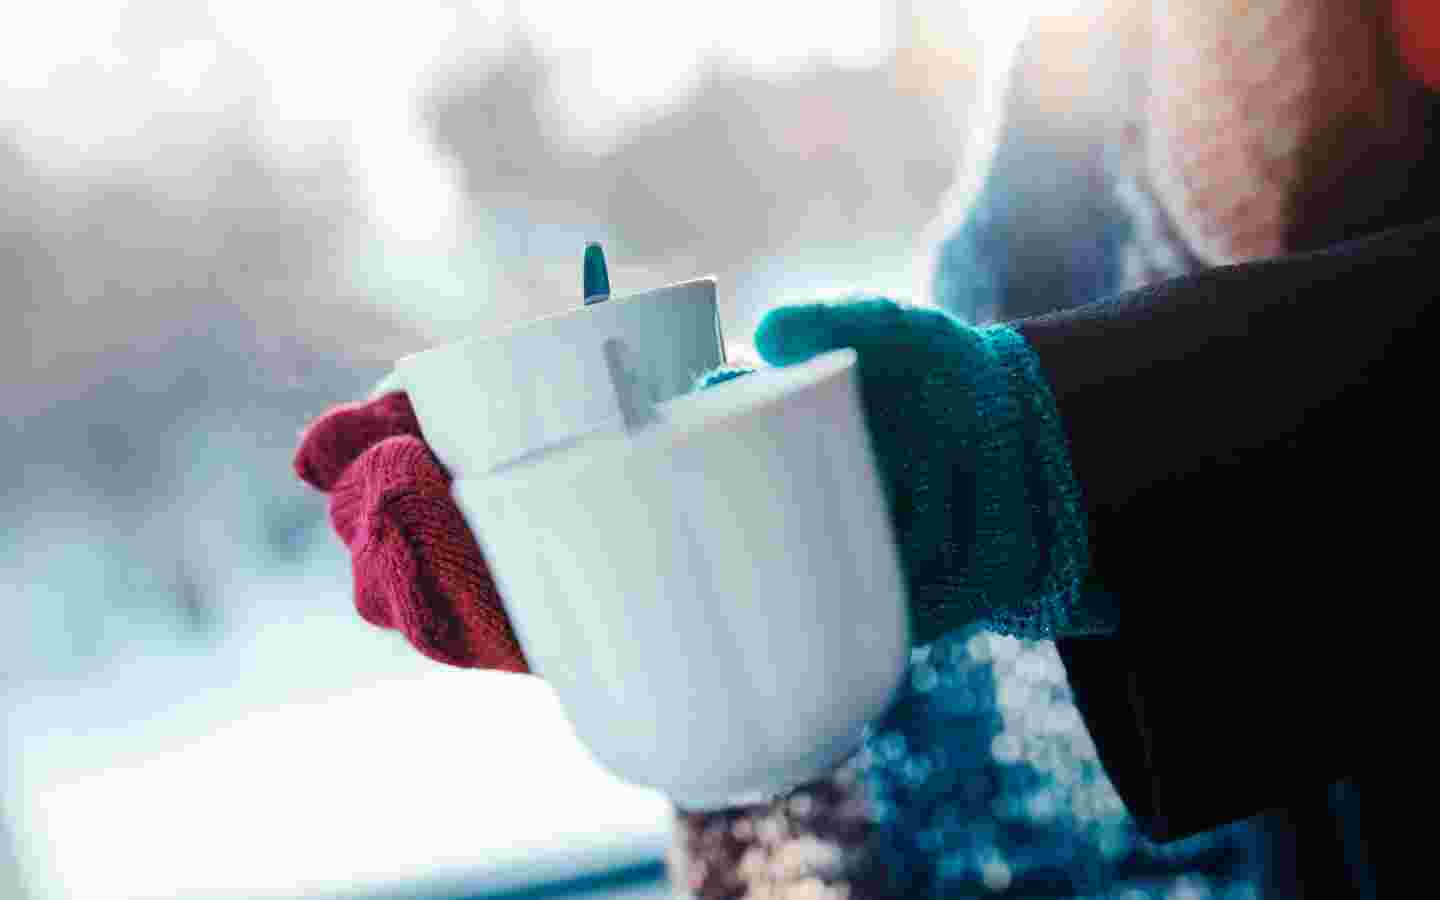 Kädet pitelevät kahvikuppeja ulkona talvisessa säässä.